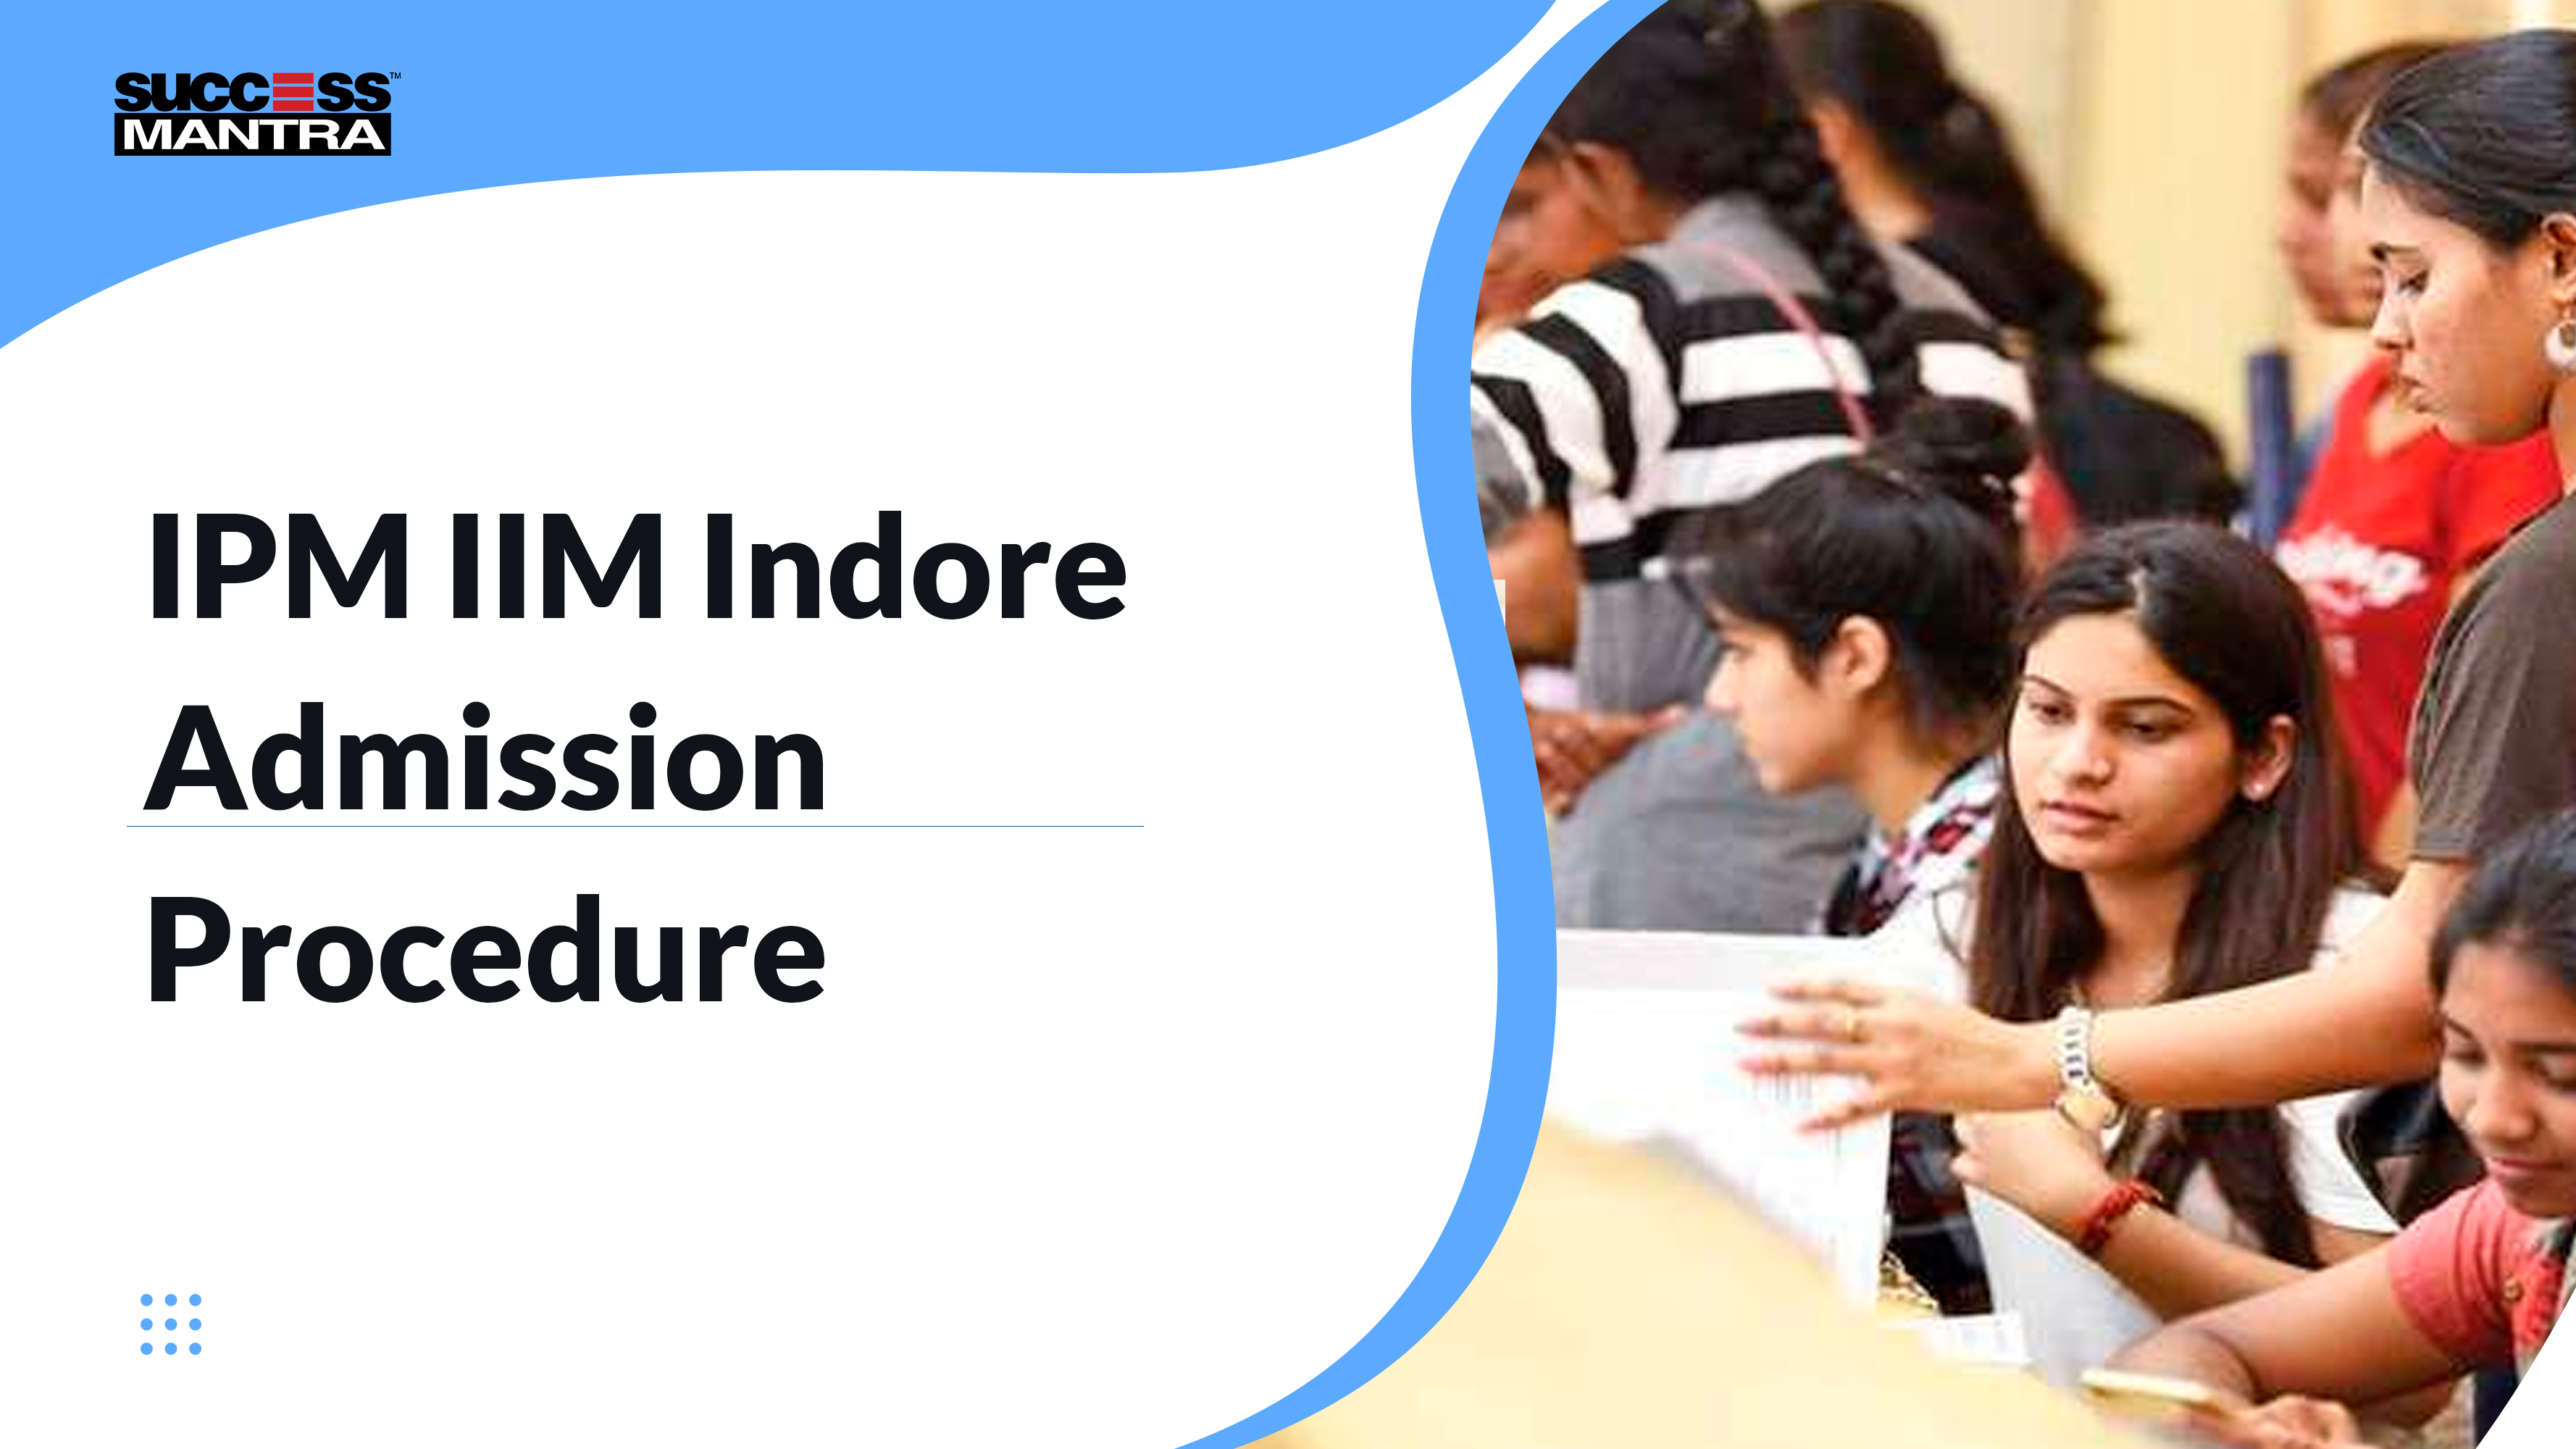 IPM IIM Indore Admission Procedure